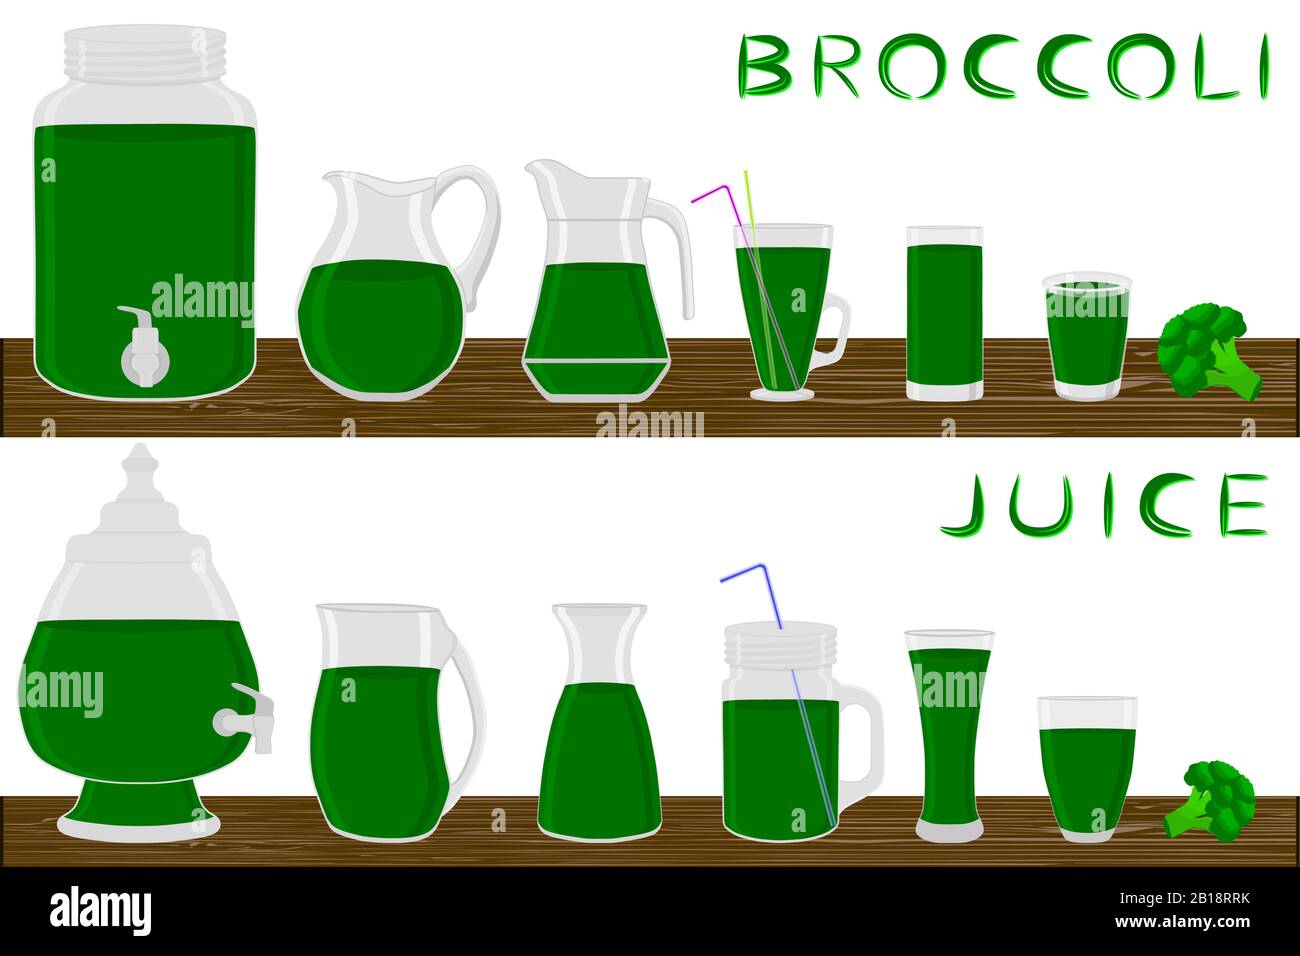 Illustrazione sul tema grande kit diversi tipi di vetreria, broccoli brocche varie dimensioni. Vetreria costituita da broccoli in plastica organica. Illustrazione Vettoriale